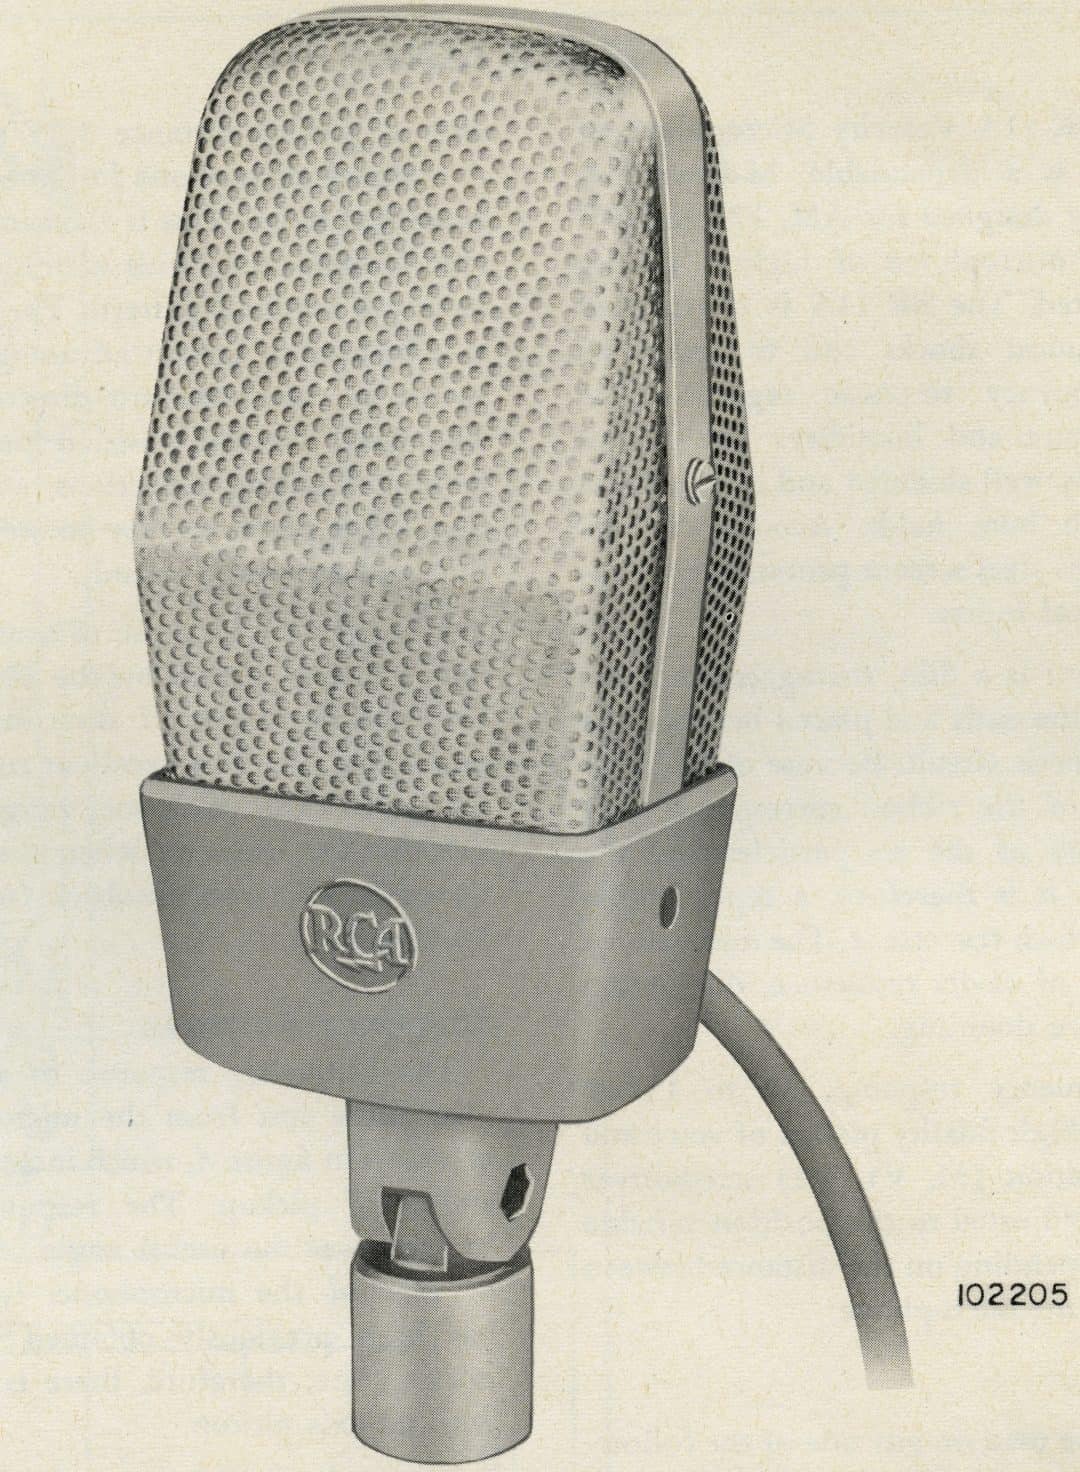 RCA BK-11 a